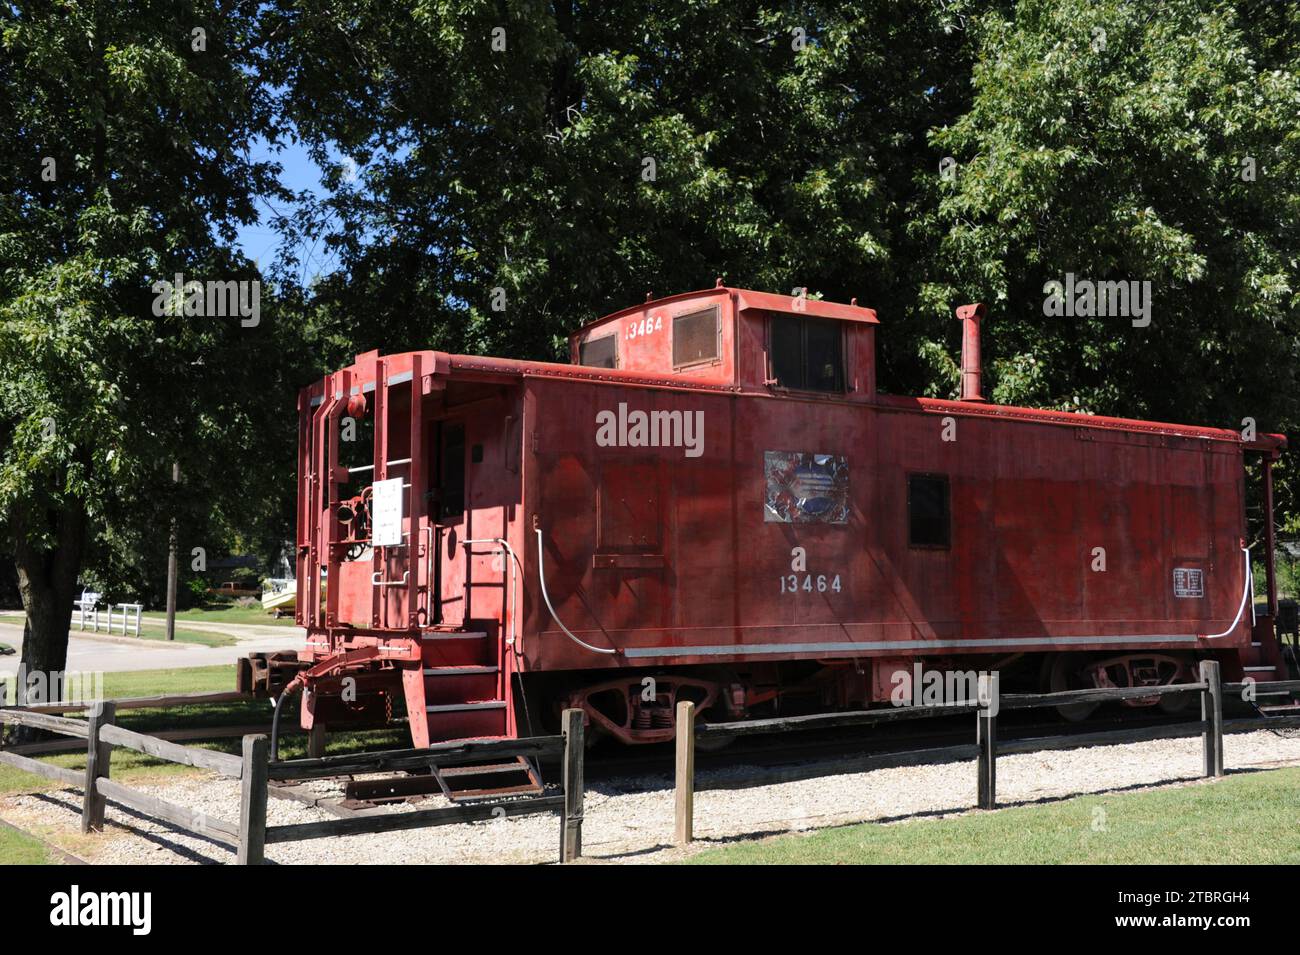 Caboose pour le Missouri, Kansas and Texas Railroad est exposé à Council Grove, Kansas. Caboose est rouge, patiné et usé. Banque D'Images